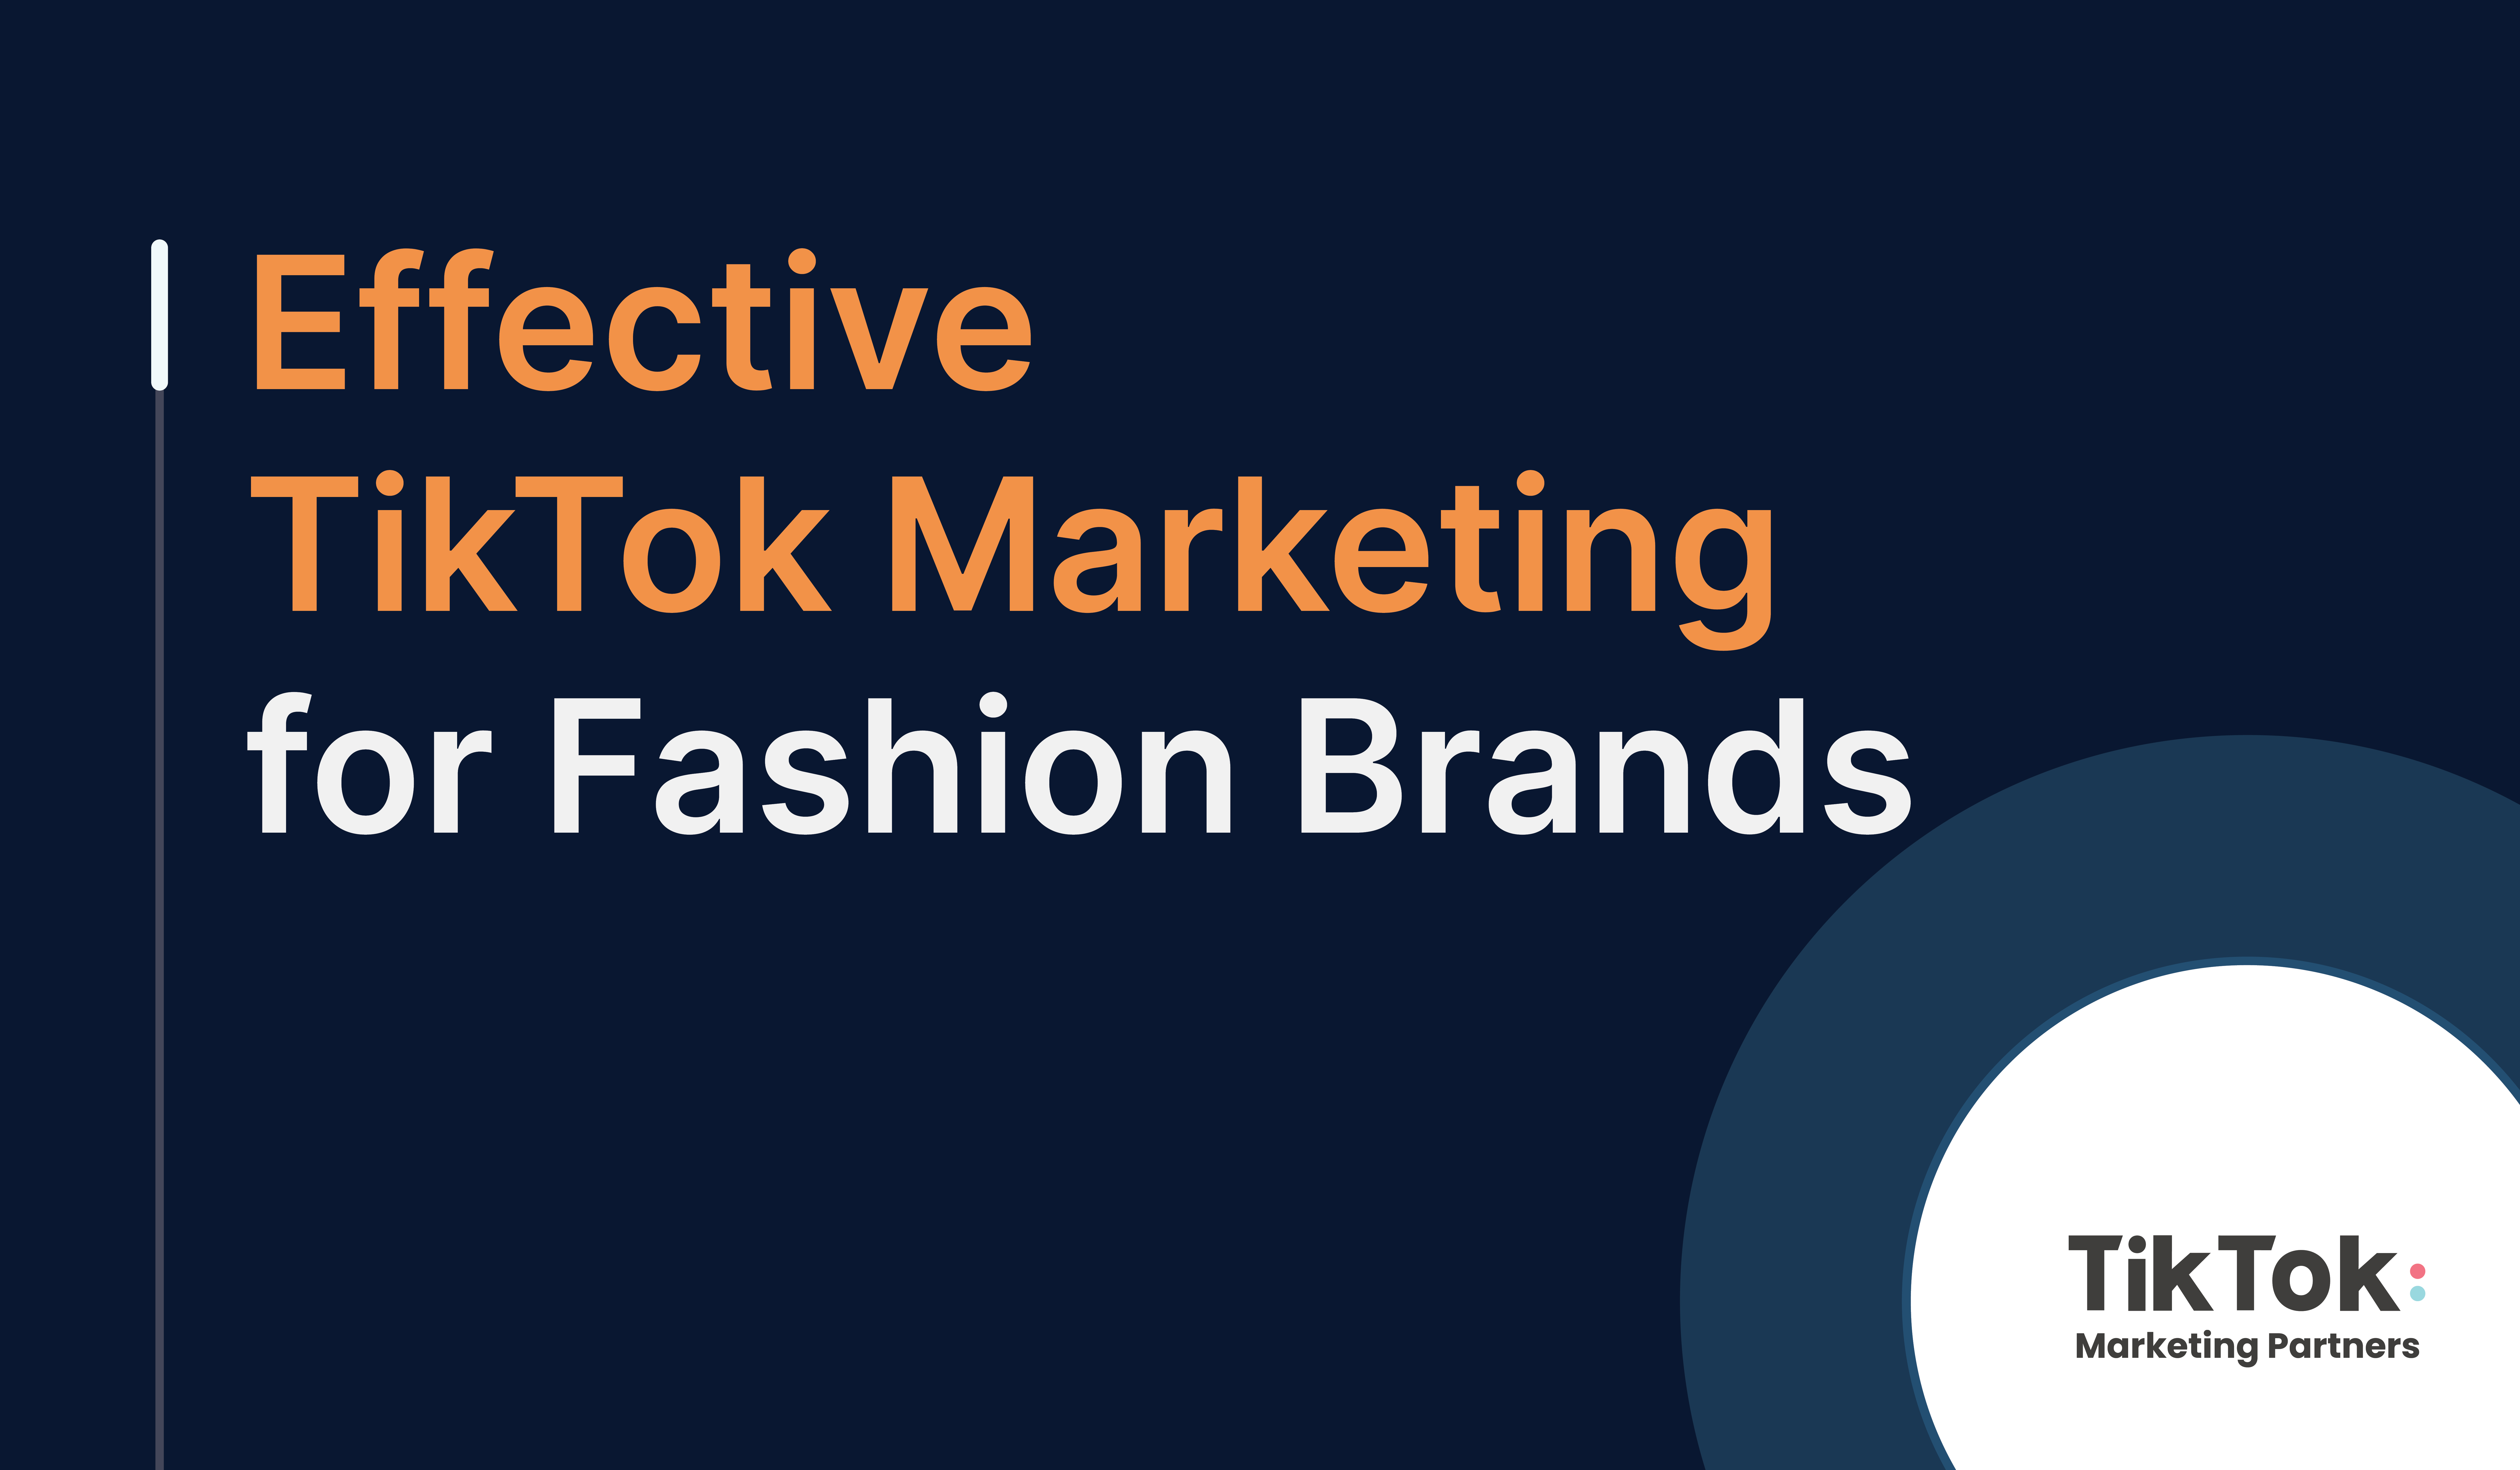 TikTok Marketing Best Practices for Fashion Brands 